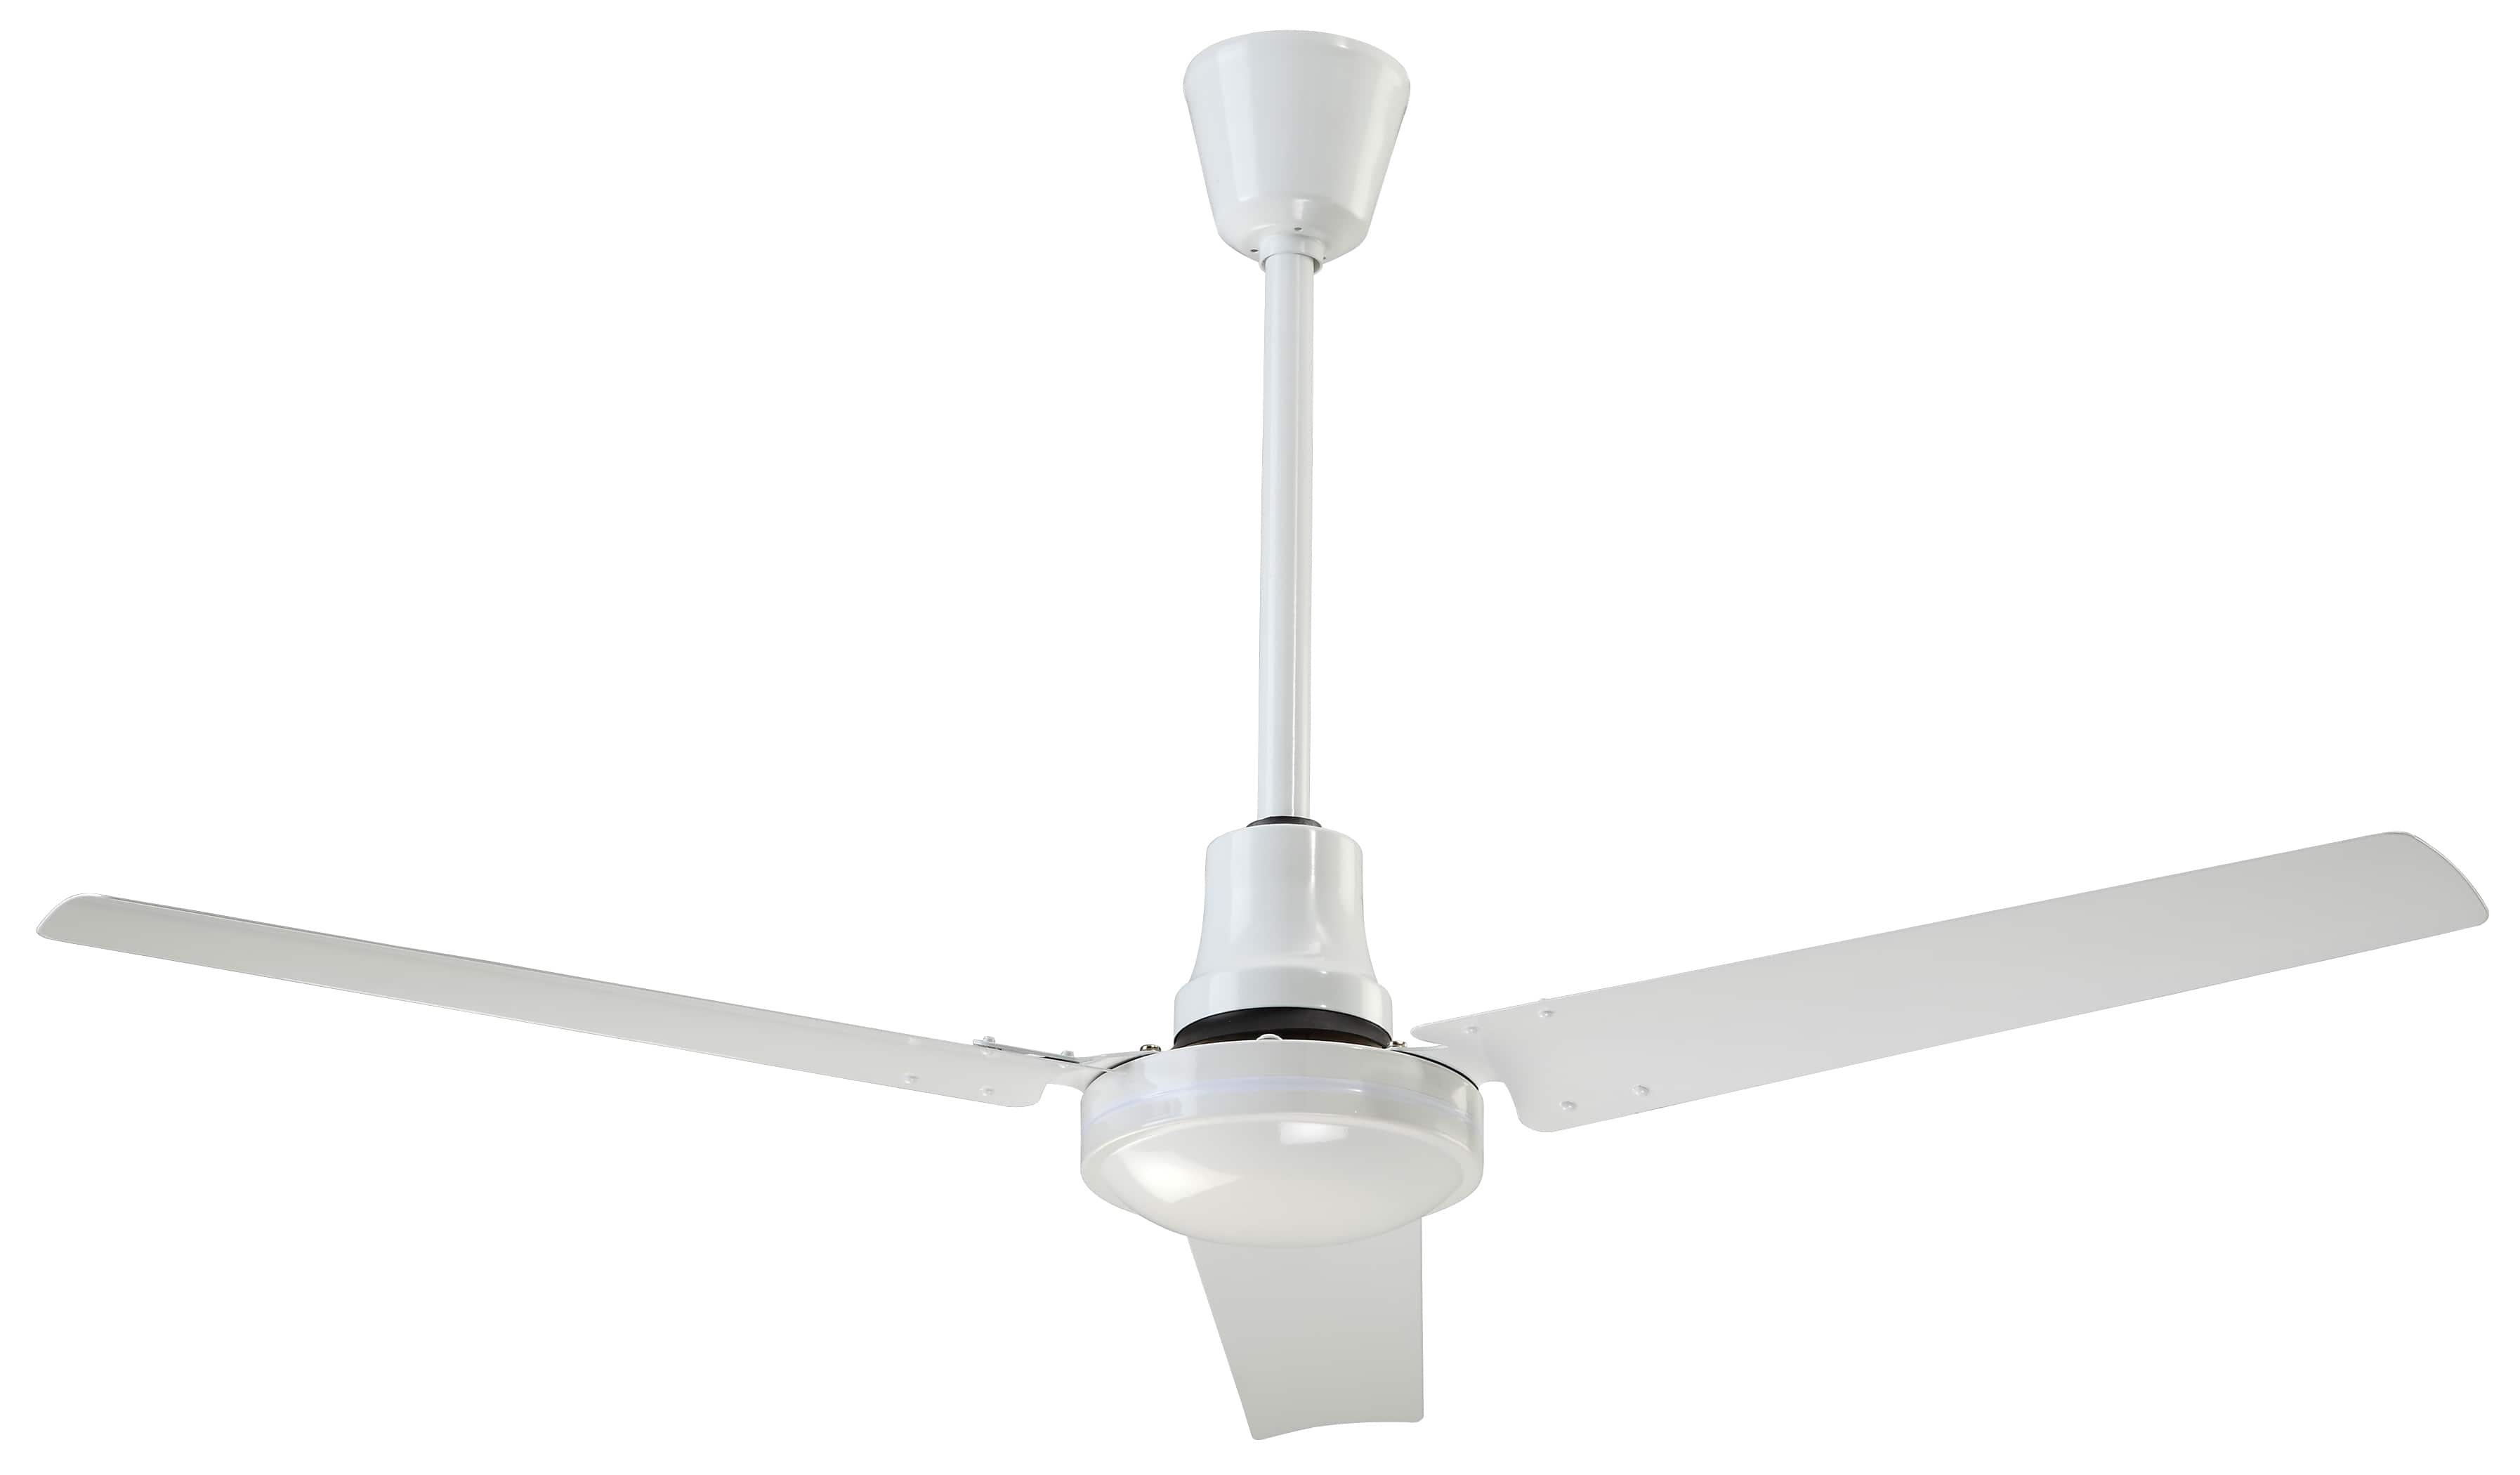 energy-efficient-fans-ceiling-fans.jpg